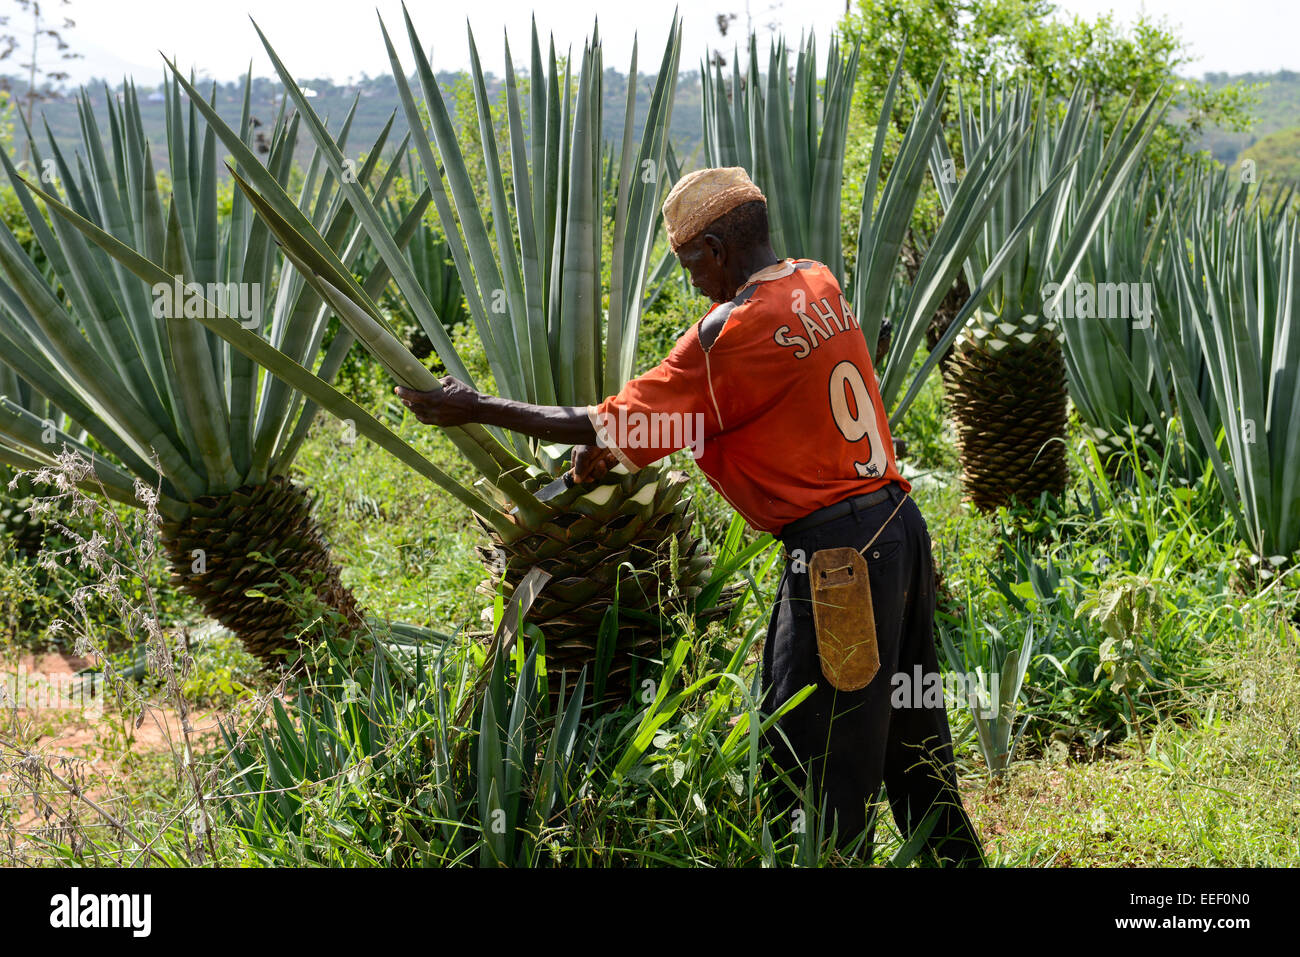 Sisal-Pflanzen (Agave Sisalana) ergeben eine steife Fasern traditionell  verwendet bei der Herstellung von Seil-Sisal-Plantage in Pangani Tansania  Stockfotografie - Alamy